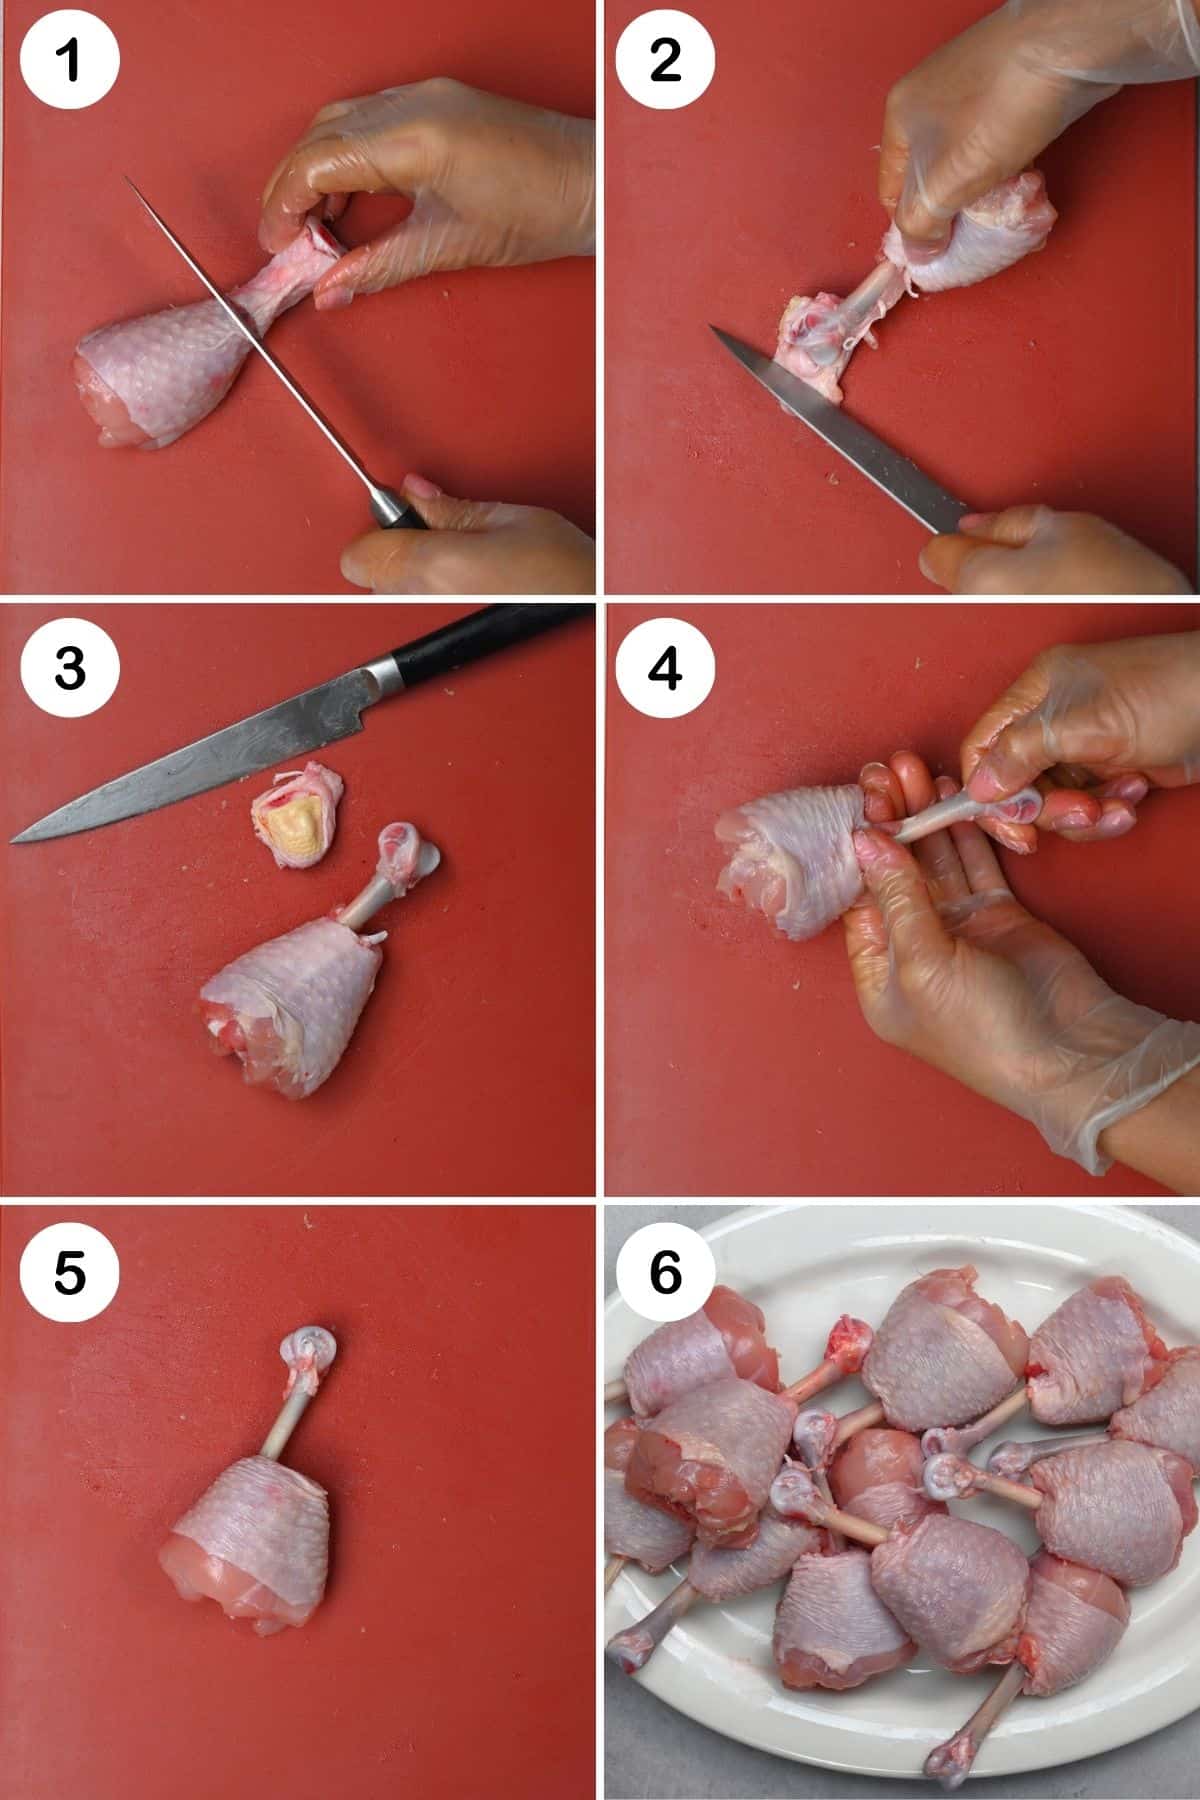 Steps for preparing chicken drumsticks